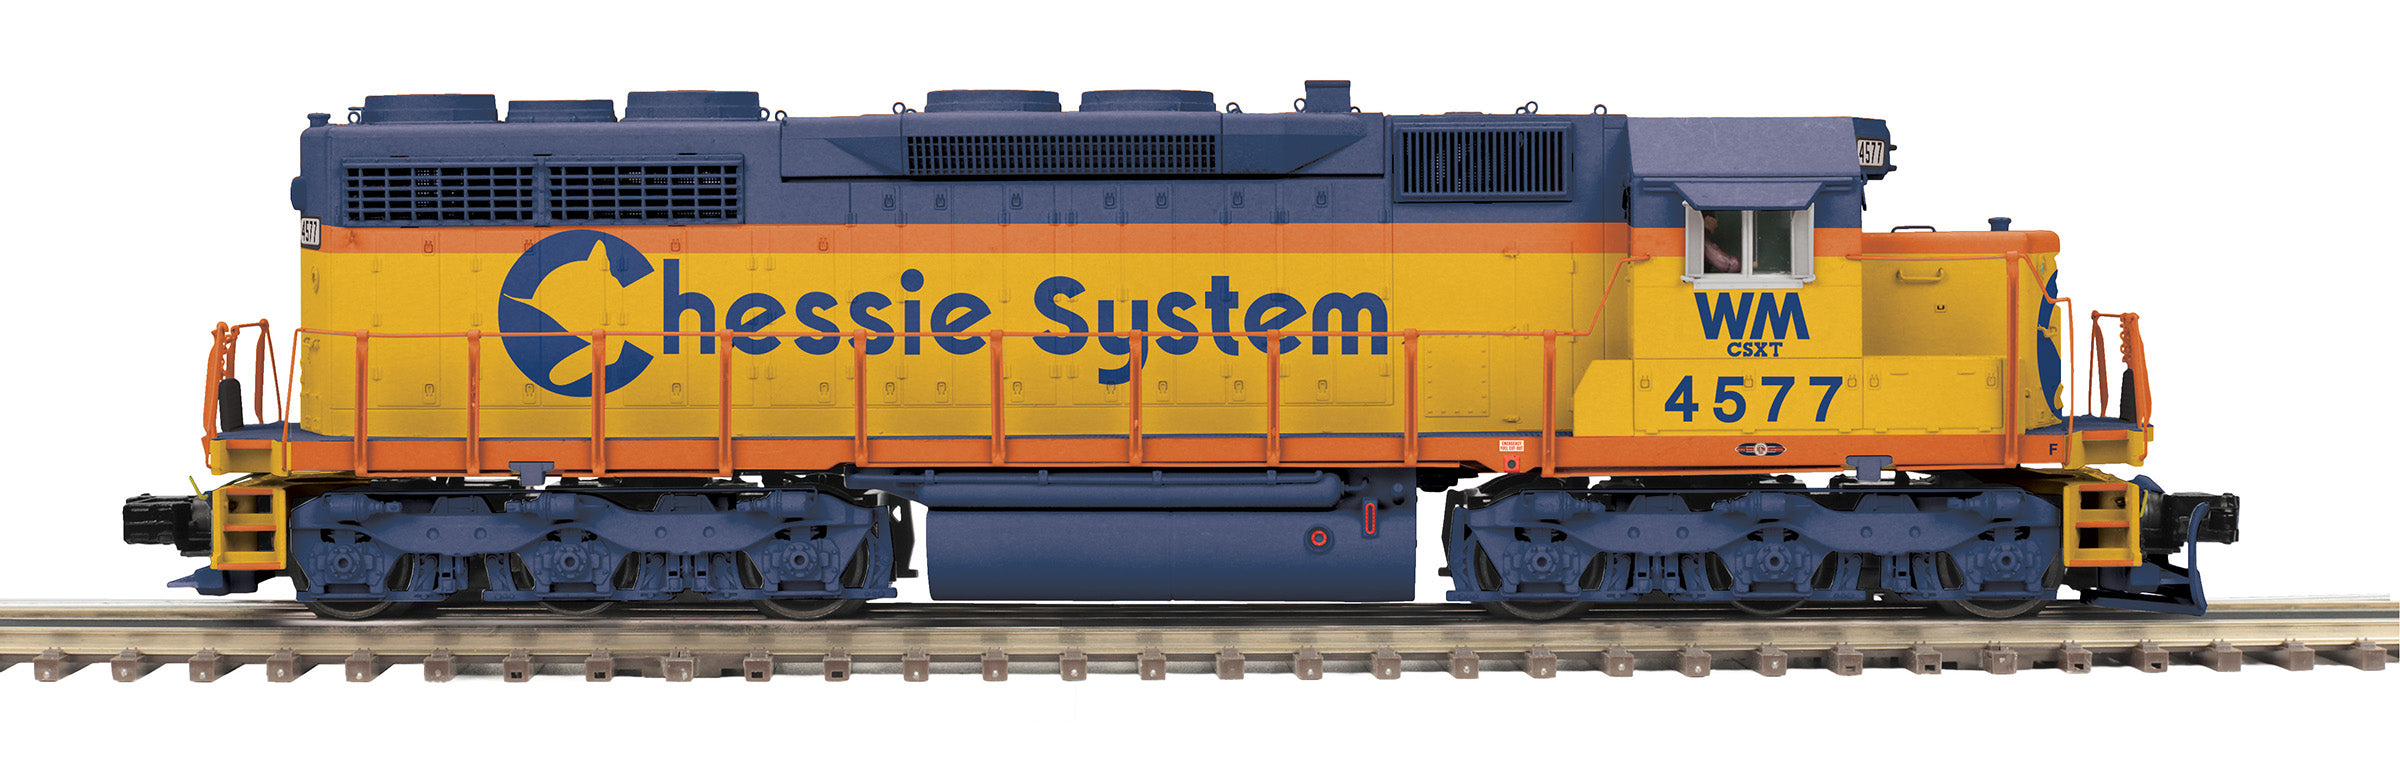 MTH 20-21755-1 - SD-35 Diesel Engine "Chessie" #4477 w/ PS3 (Western Maryland)